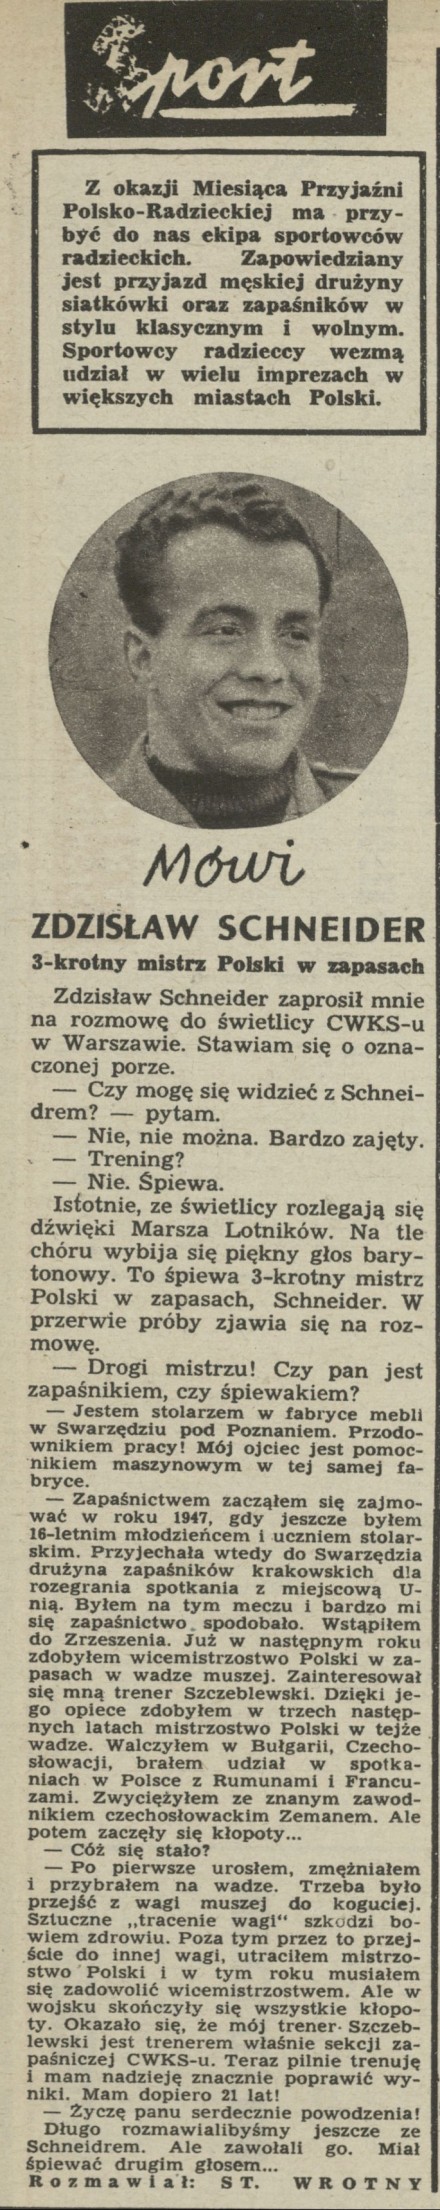 Mówi Zdzisław Schneider - 3-krotny mistrz Polski w zapasach